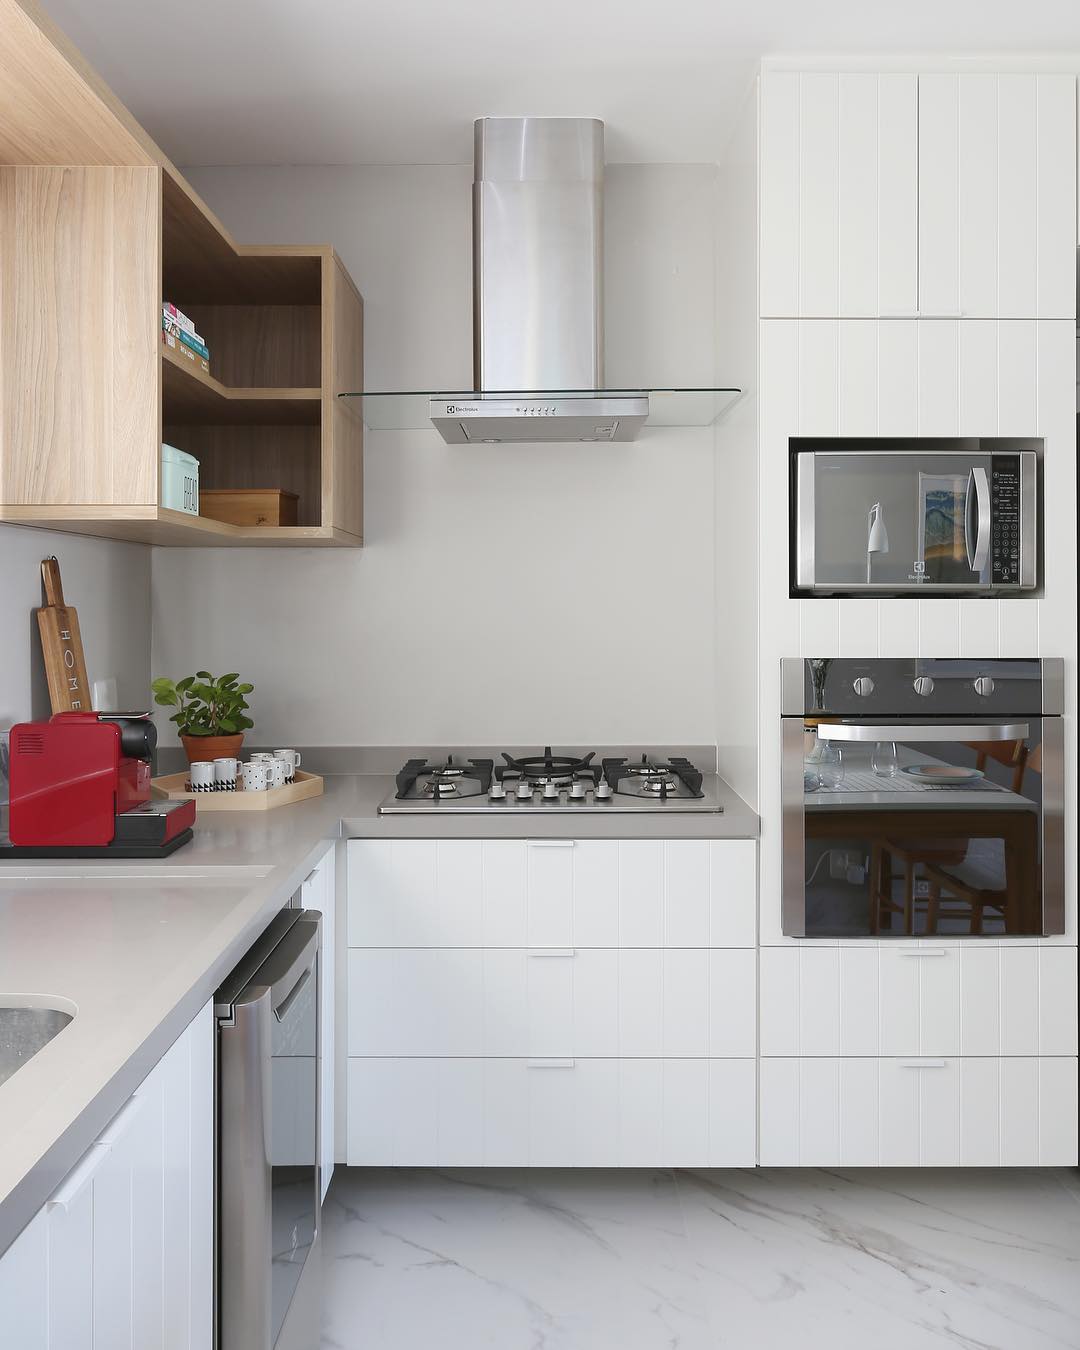 Cozinha em L com eletrodomésticos integrados ao armário